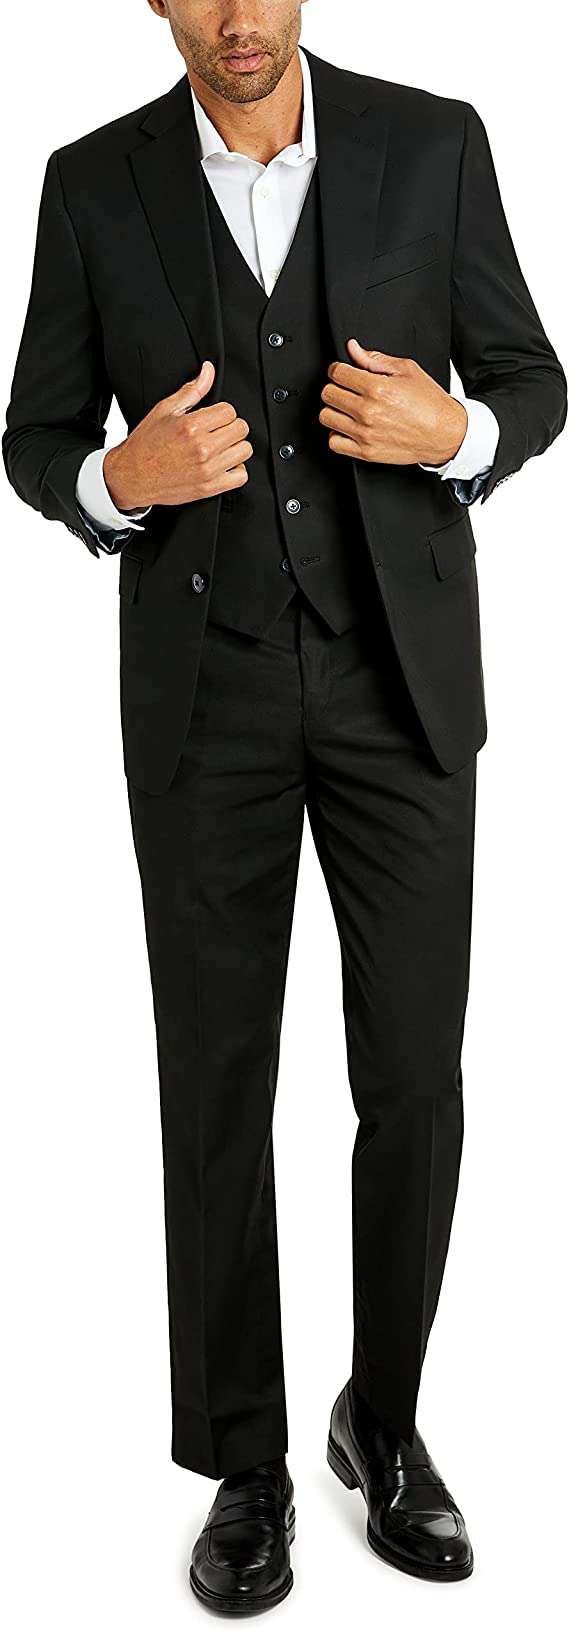 All black suit men: